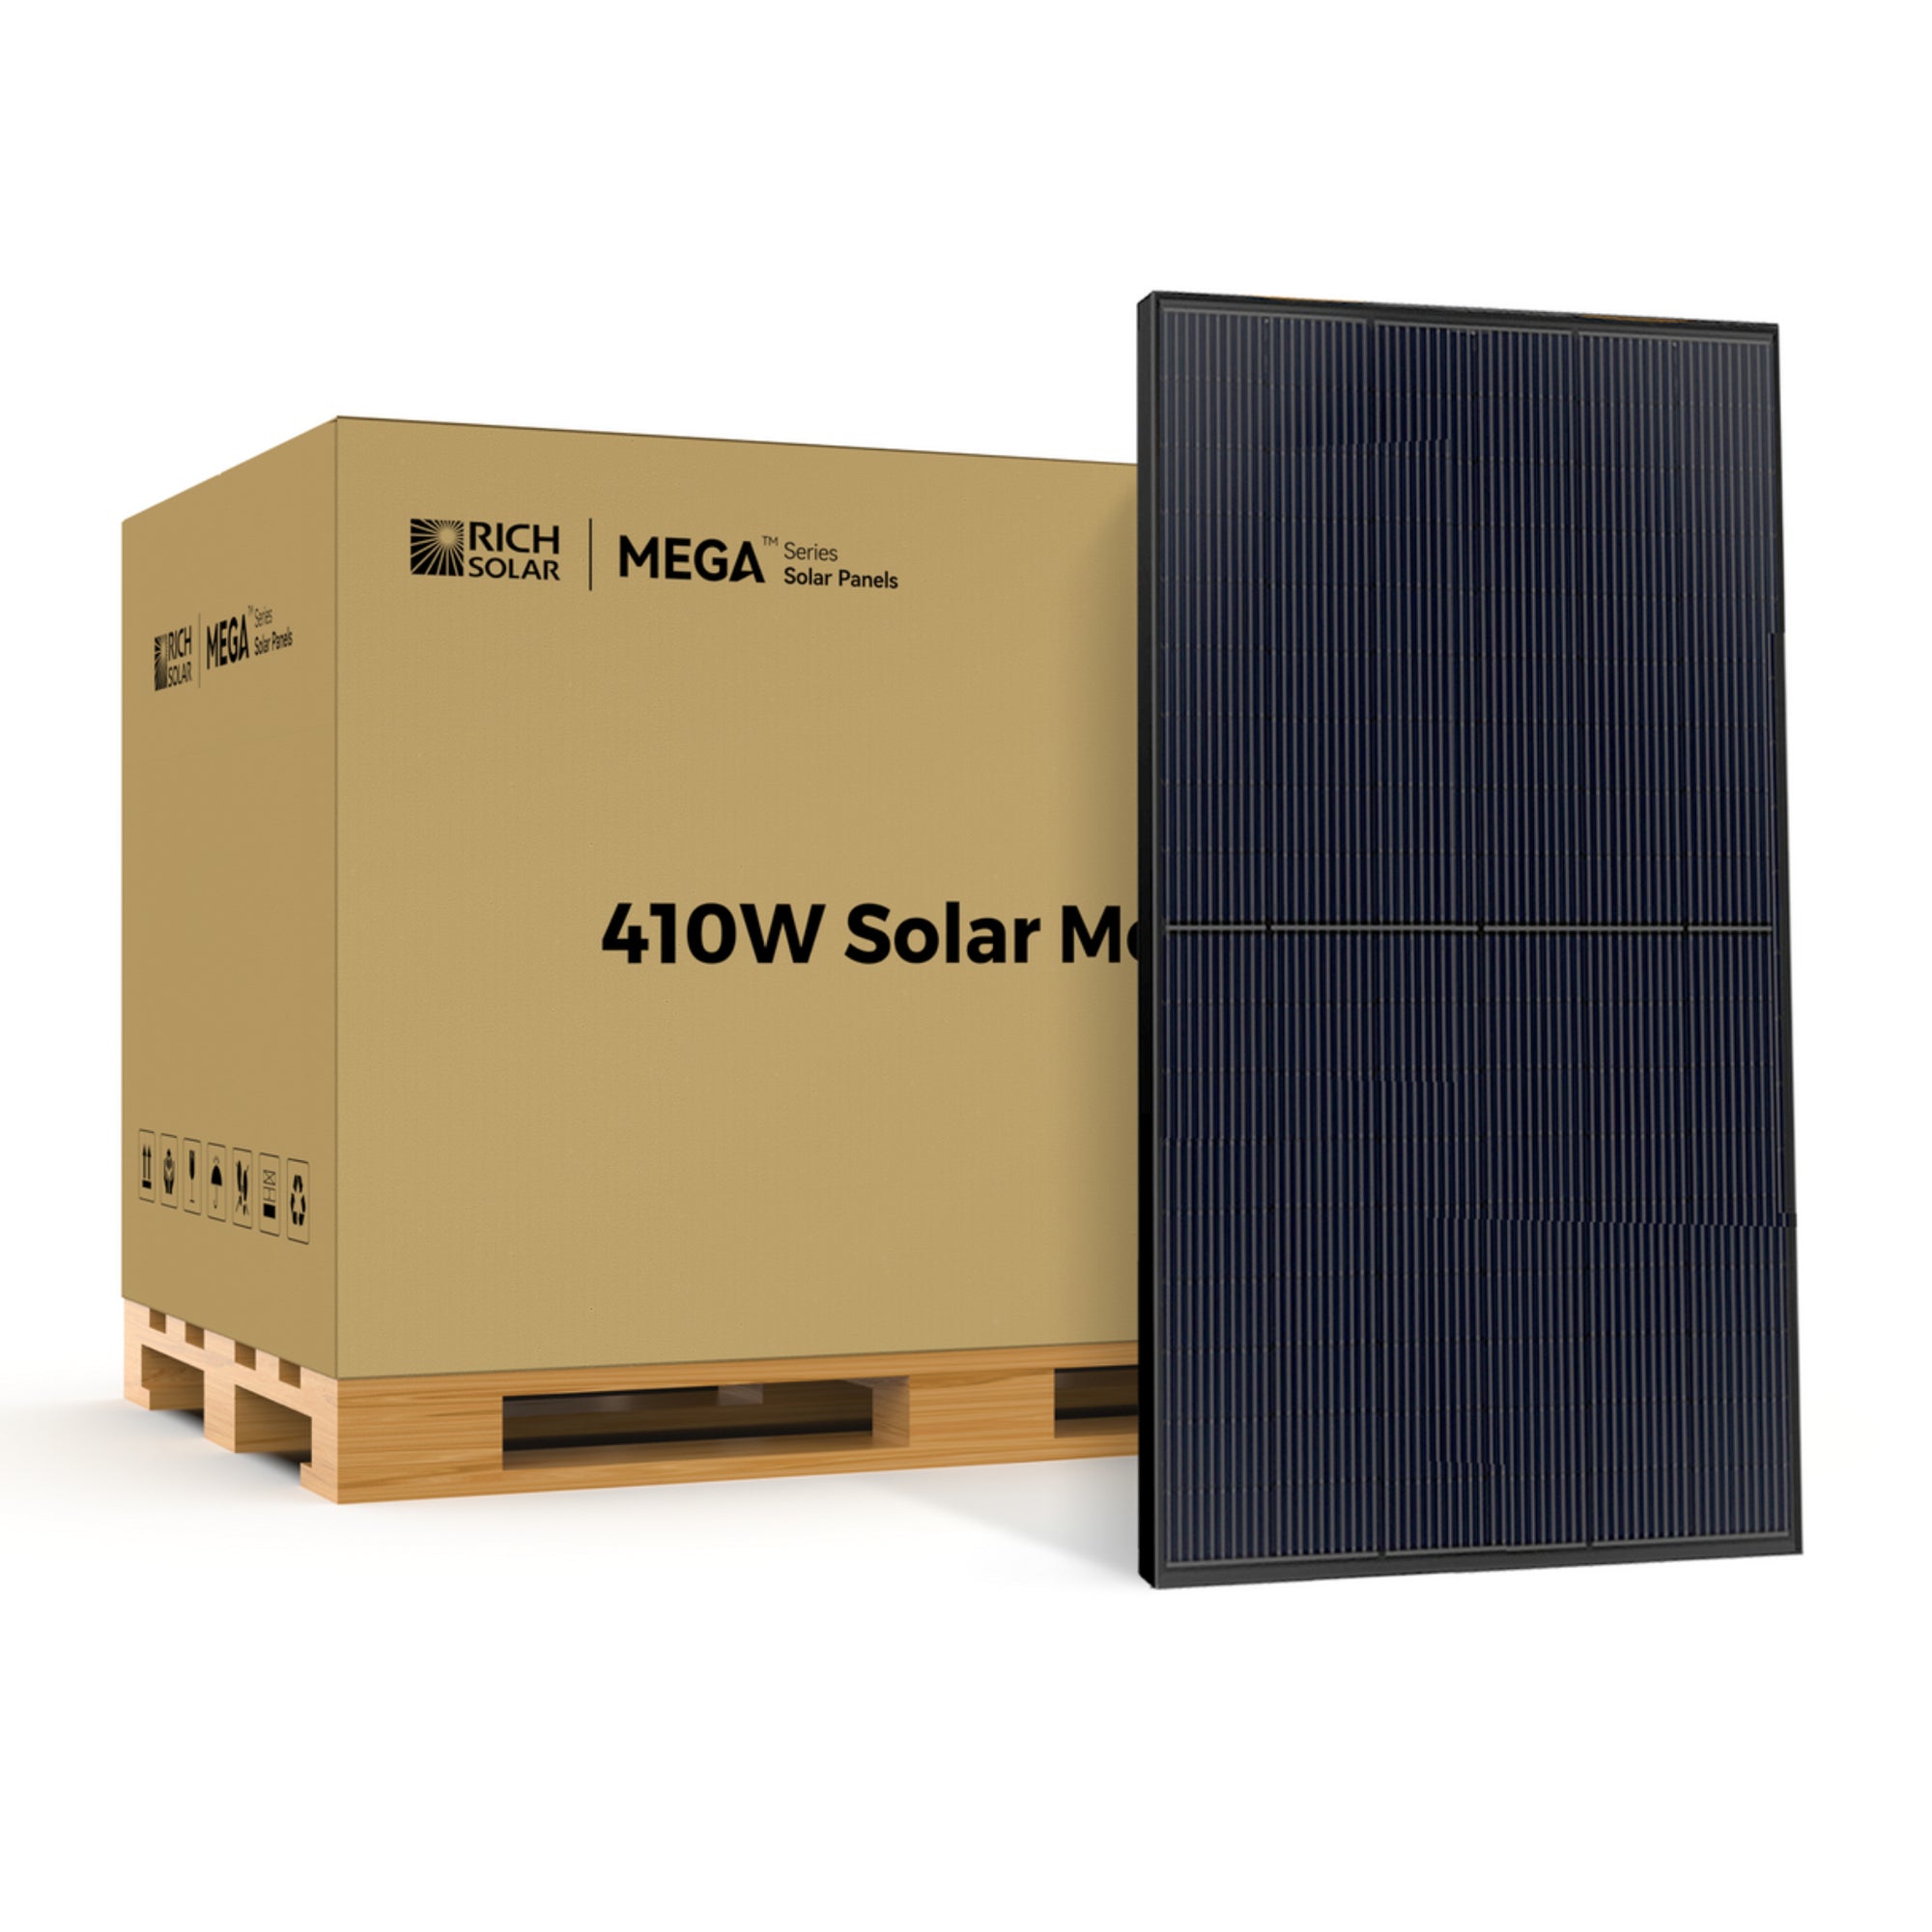 Rich Solar MEGA 410 Watt Solar Panel